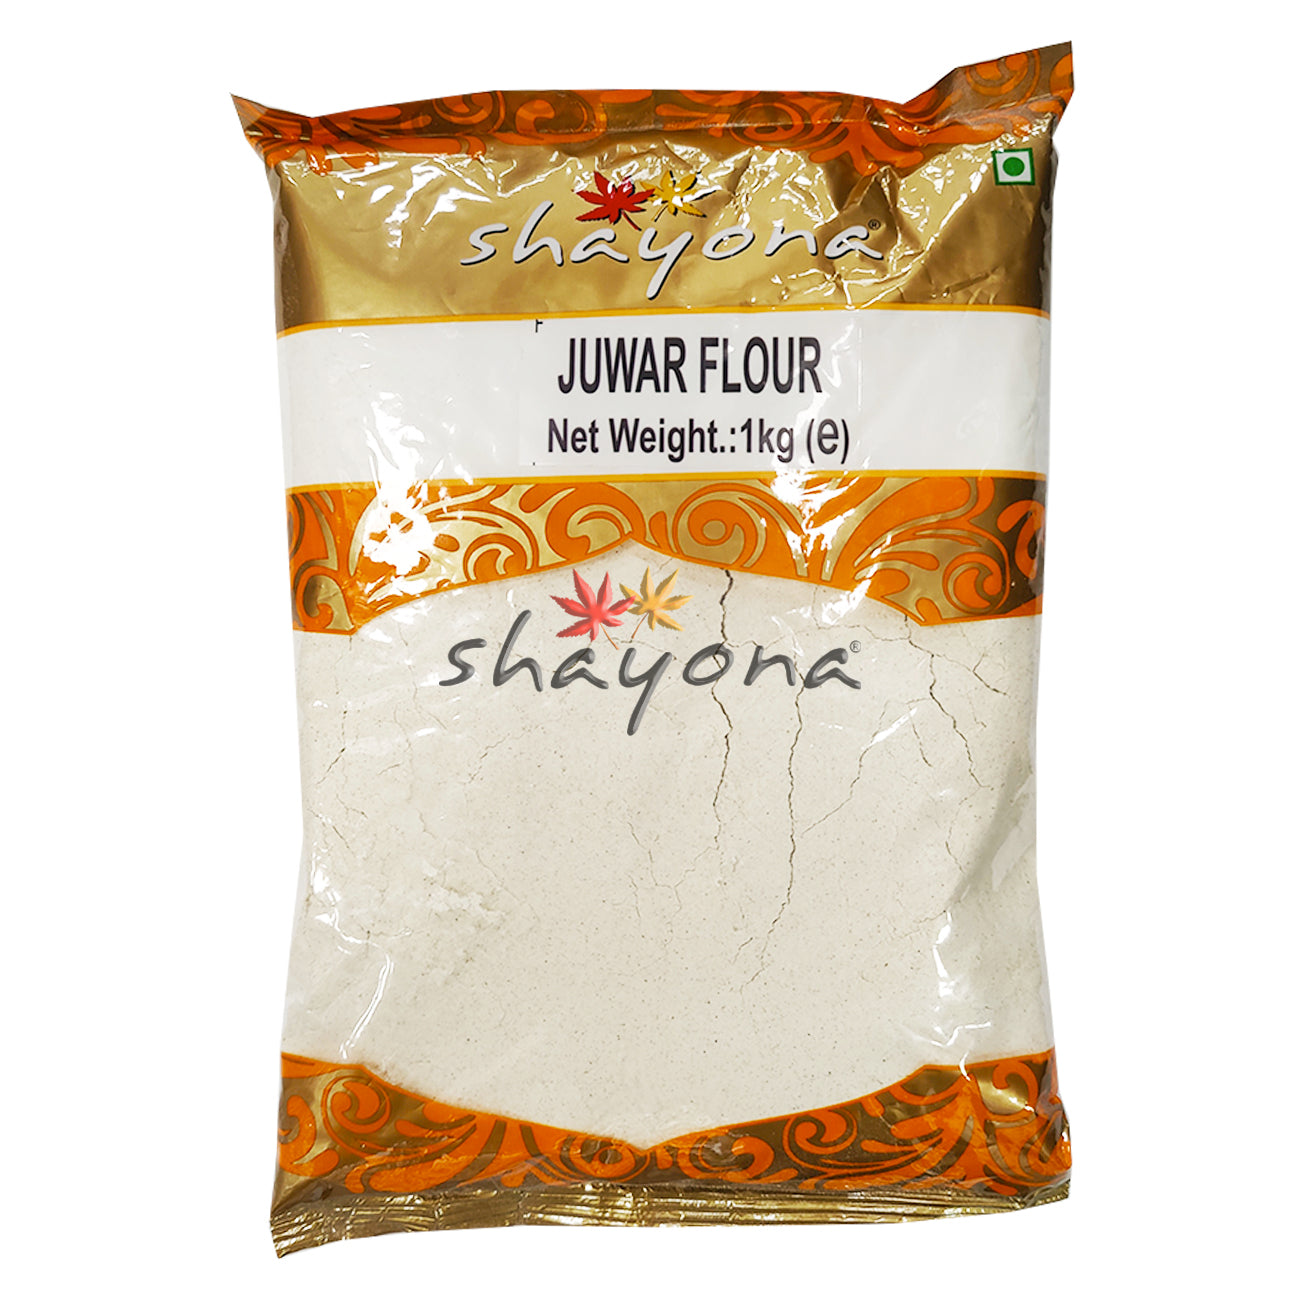 Shayona Juwar Flour